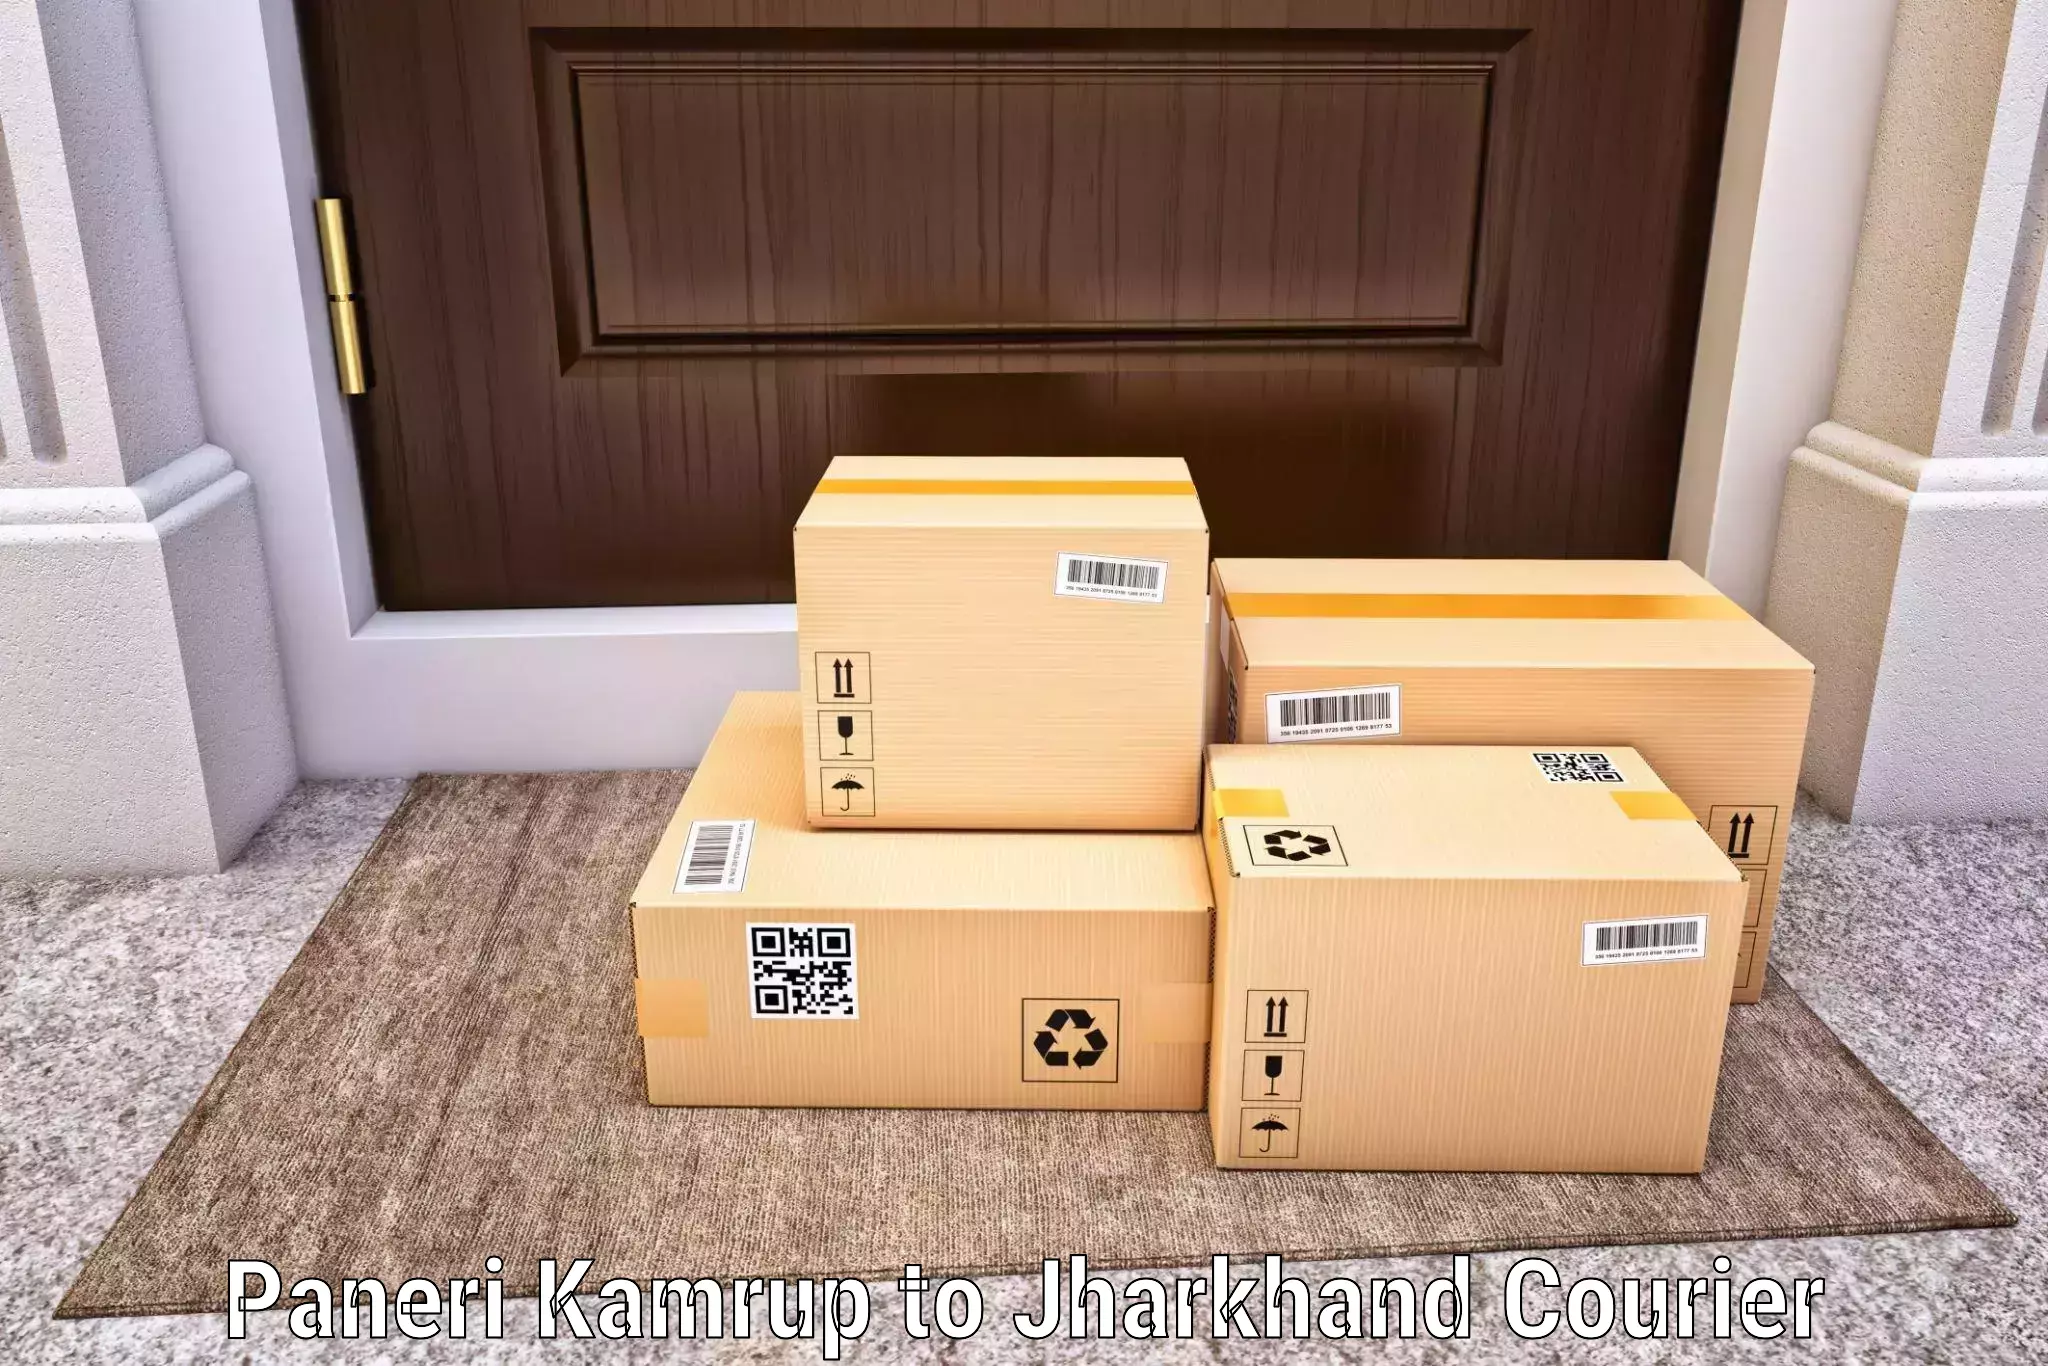 Smart parcel solutions Paneri Kamrup to Jamshedpur